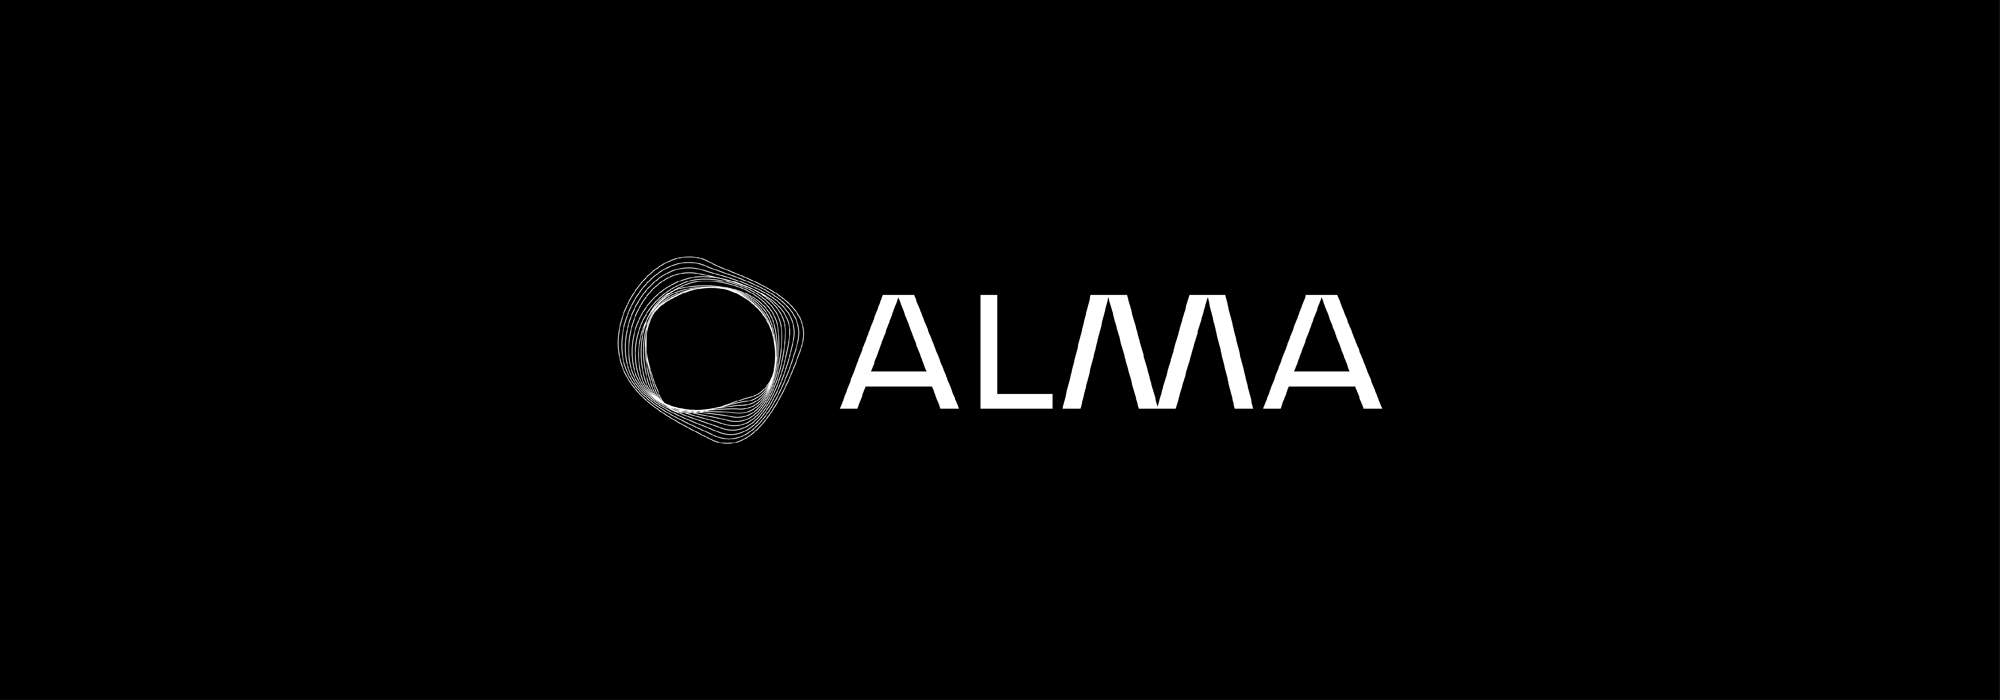 ALMA - Netzwerk basierende Steuerung und Kontrolle von Systemen und Prozessoren